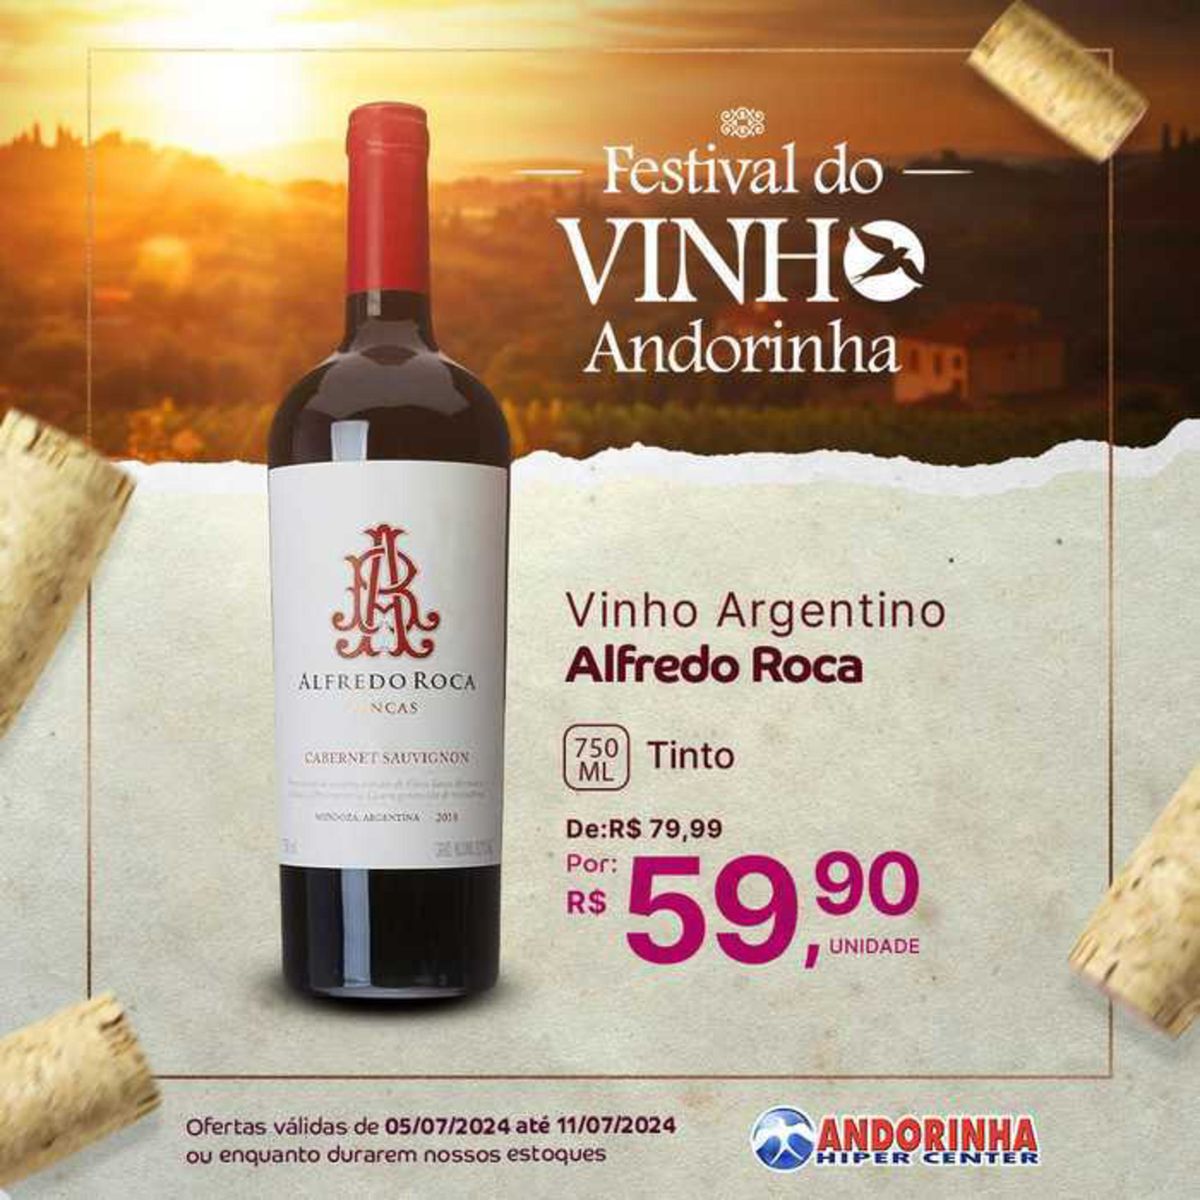 Vinho Argentino Alfredo Roca 750ml em promoção